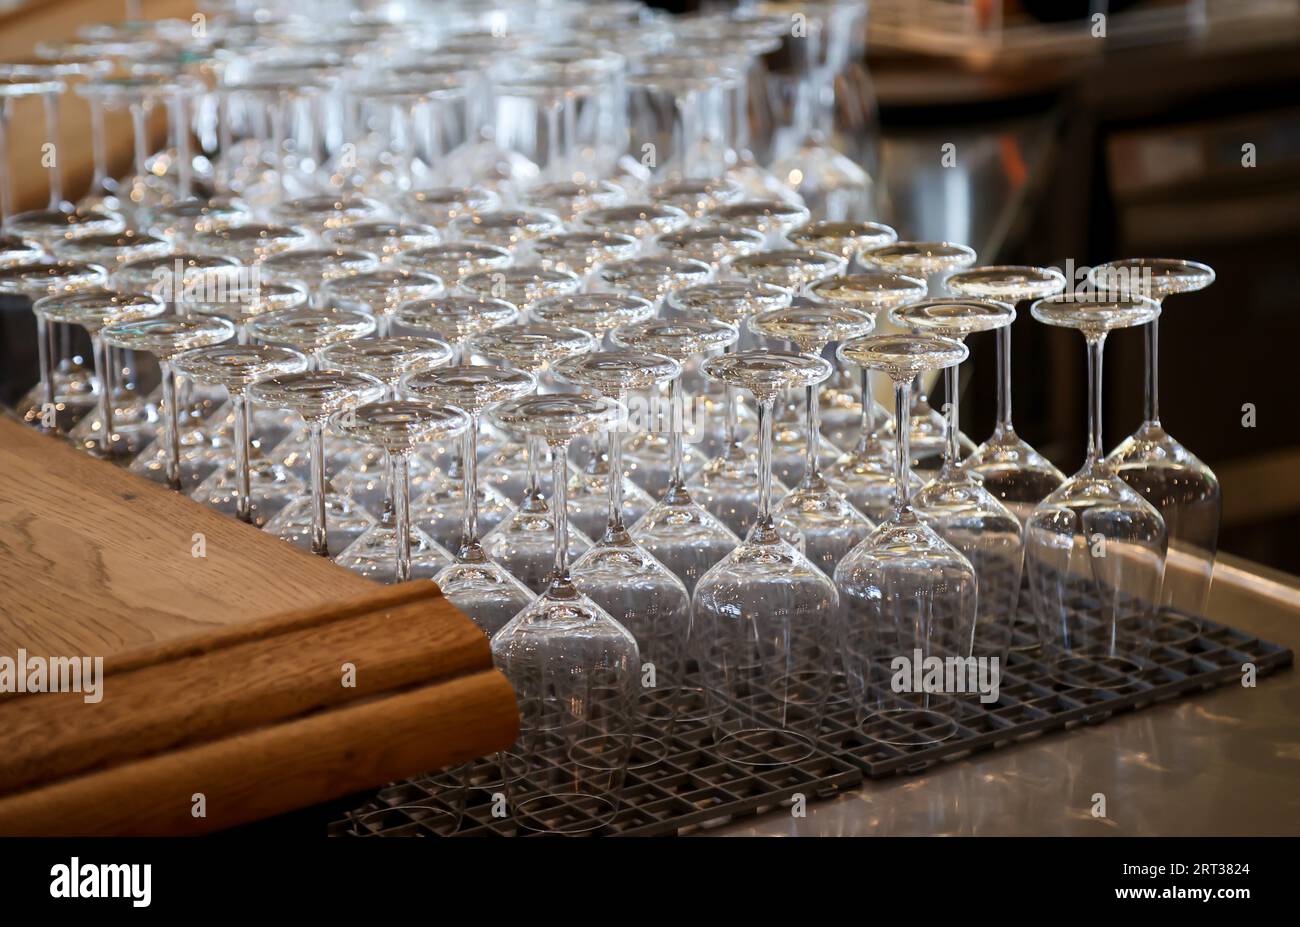 Molti bicchieri da vino puliti aspettano di essere riempiti al bancone Foto Stock